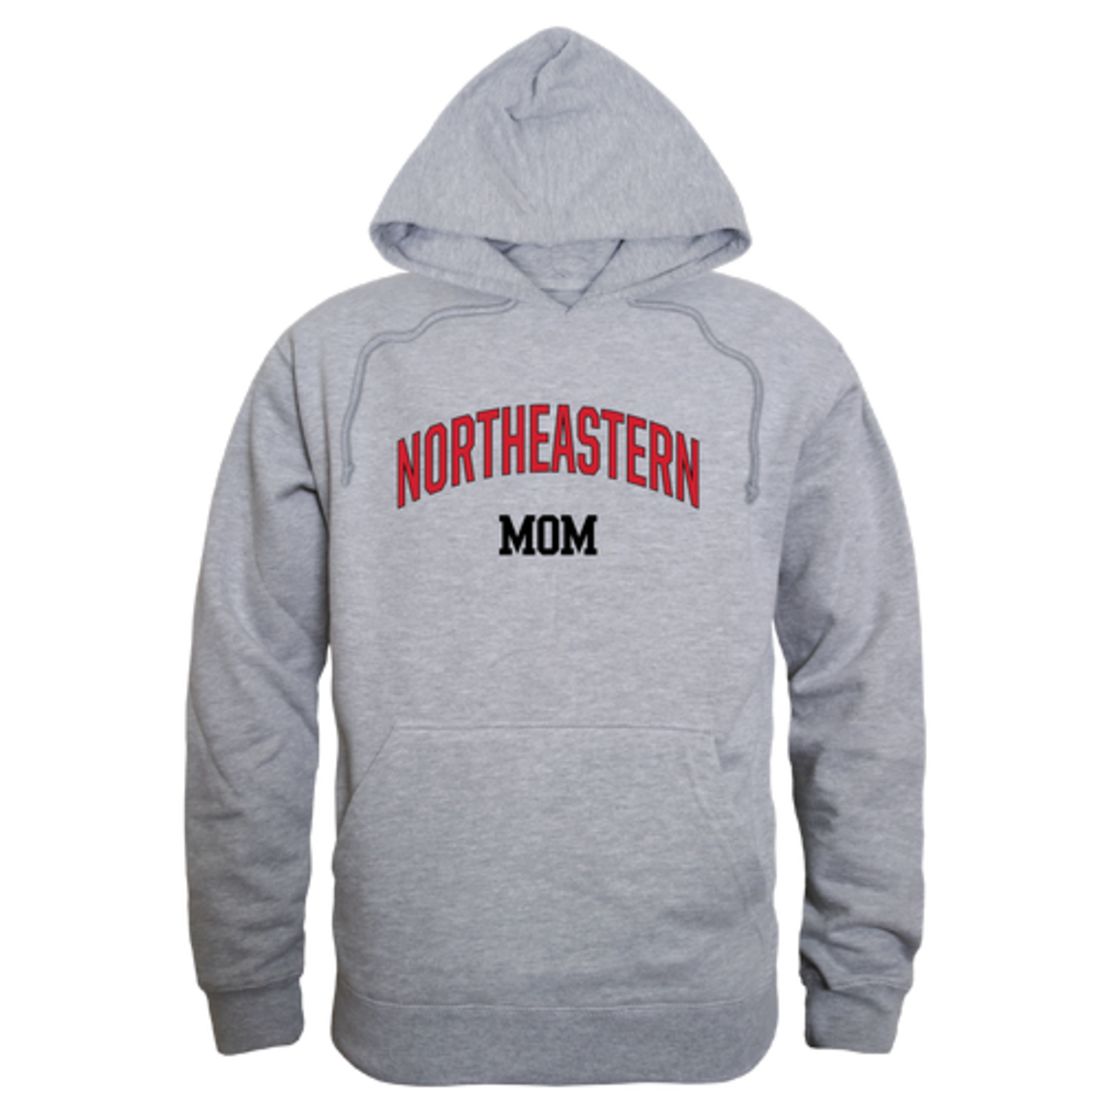 Northeastern University Huskies Campus Hoodie Sweatshirt Heather Grey